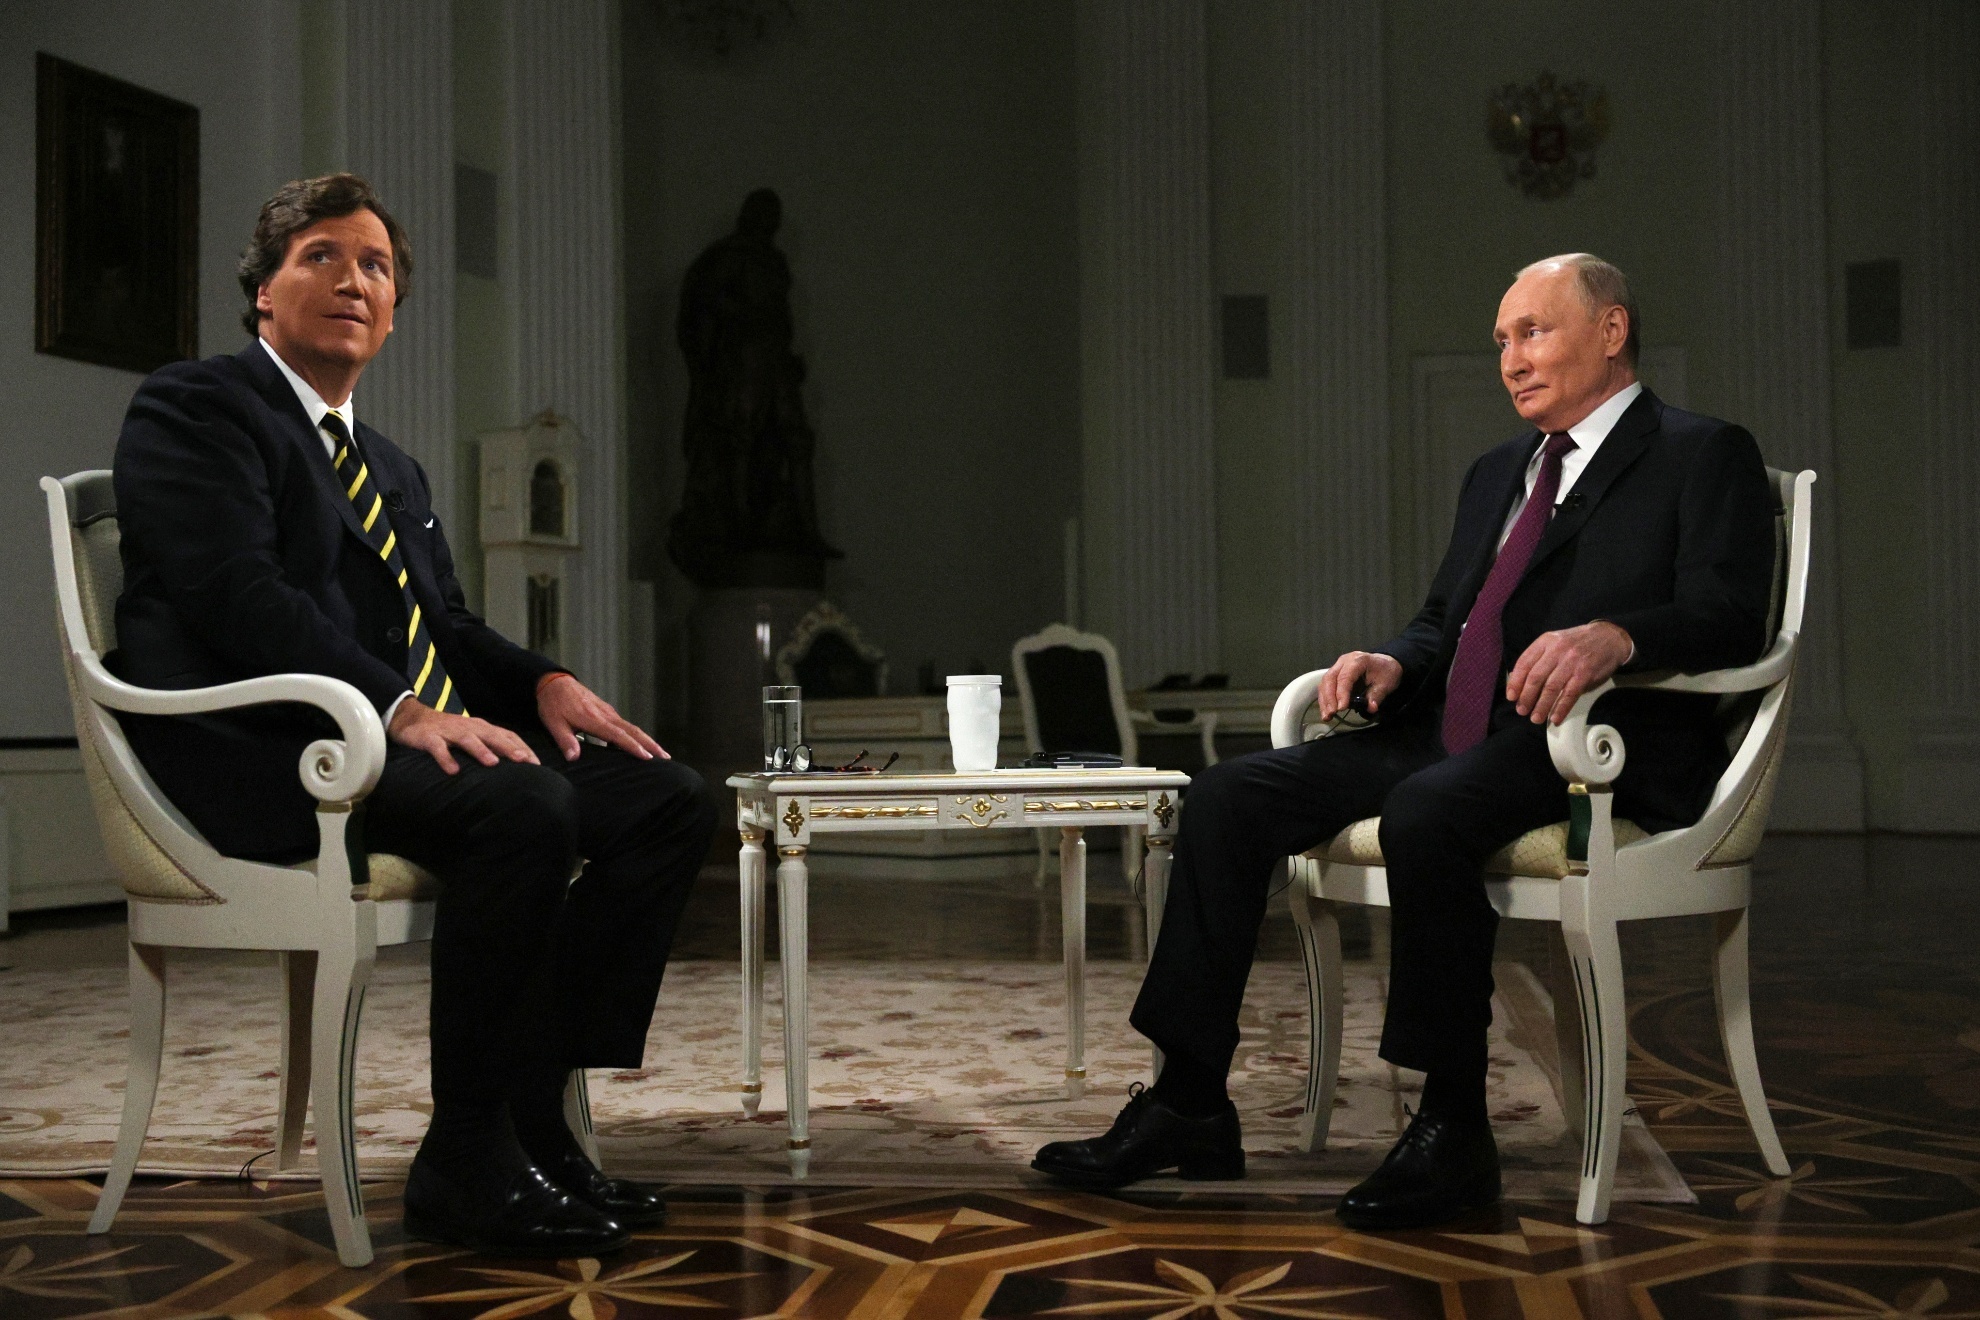 Tucker Carlson interviews Vladimir Putin at The Kremlin